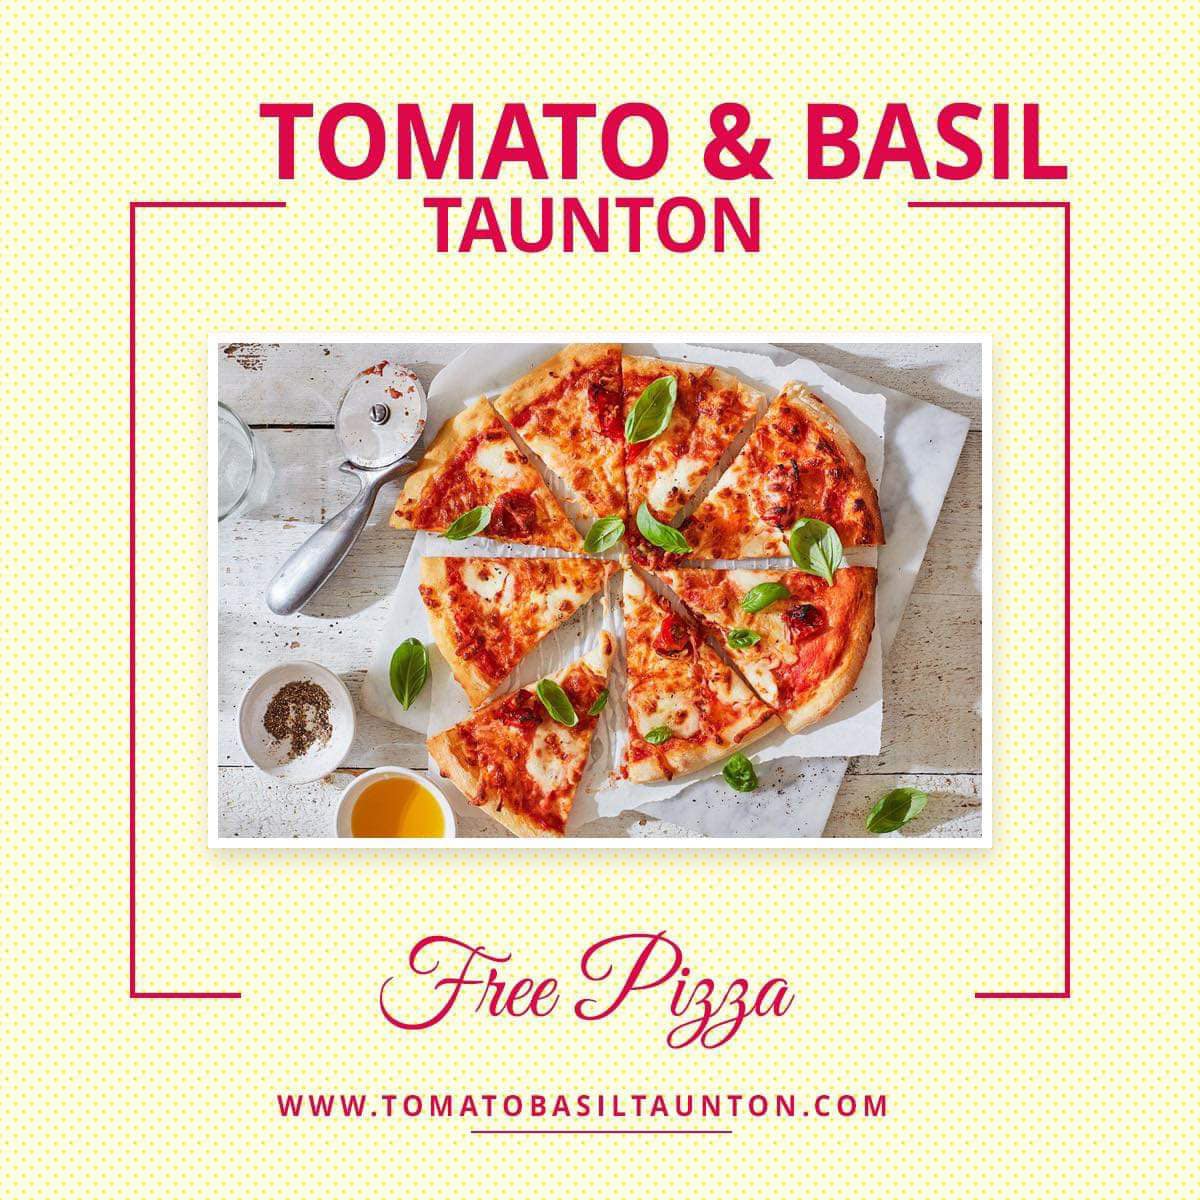 Tomato & Basil Taunton